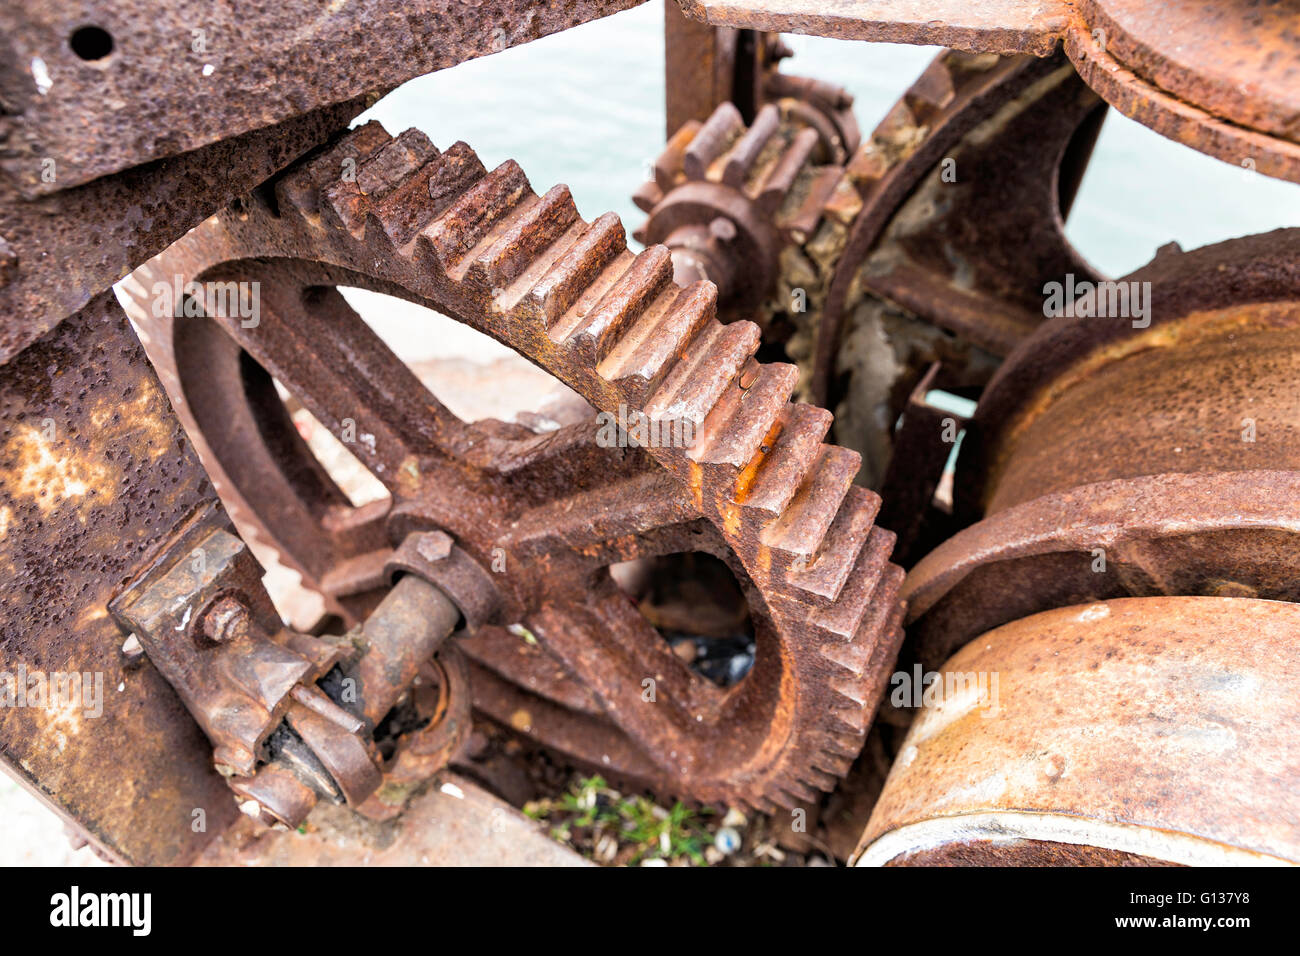 Viejos oxidados engranajes para la industria pesada como piezas de maquinaria Foto de stock